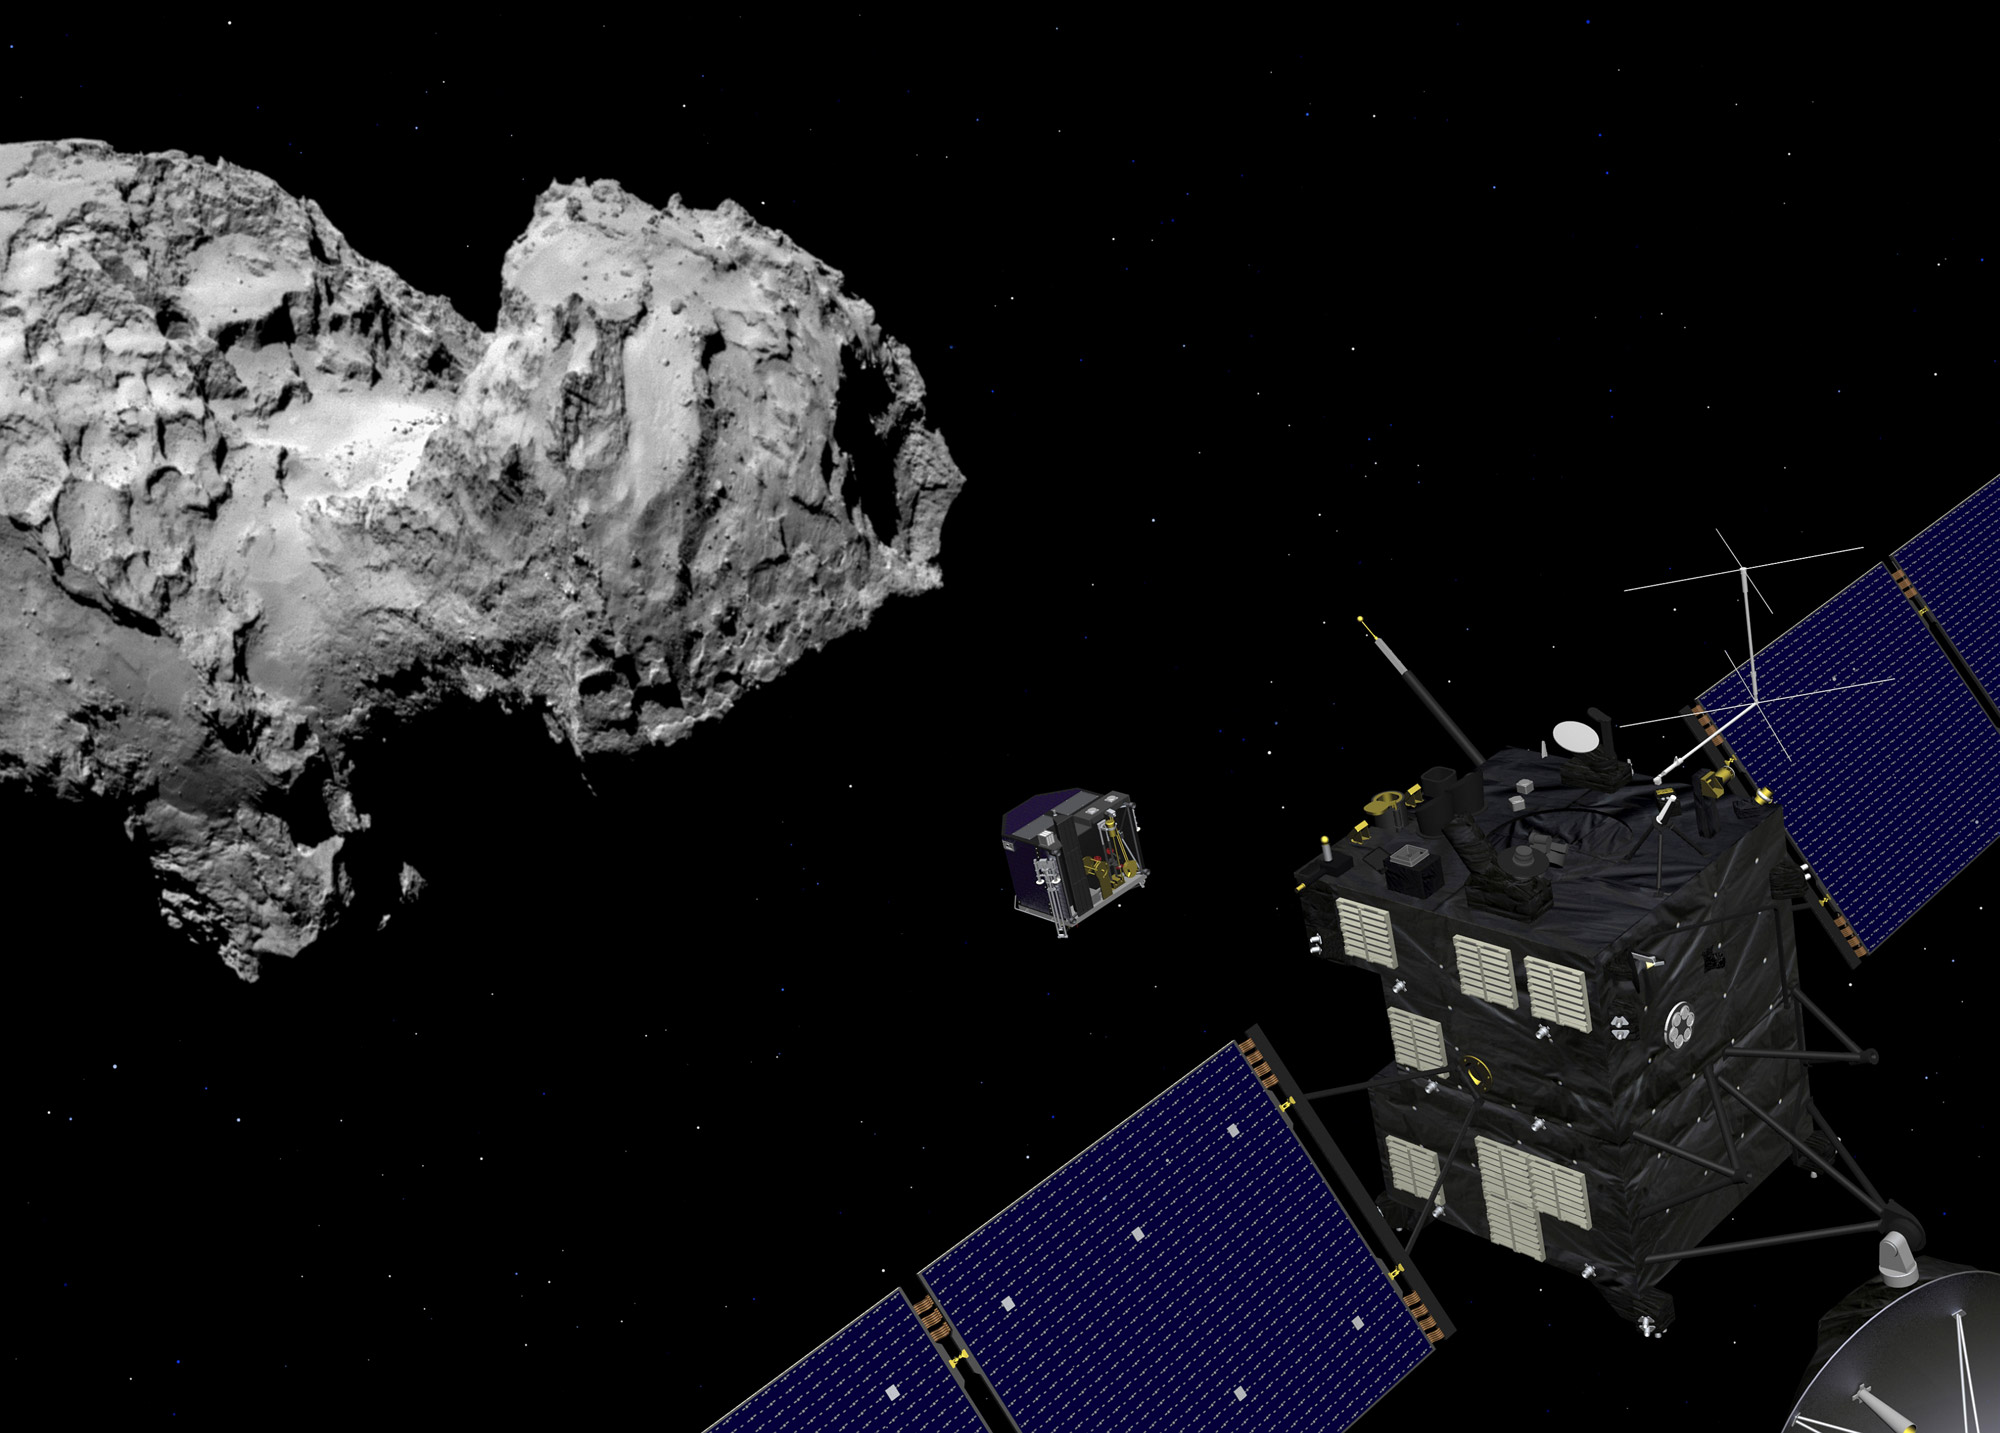 Le dernier pari audacieux de la mission Rosetta est prévu le 30 septembre 2016. Alors que la sonde n'a pas été conçue pour cela, elle tentera de se poser sur la comète Churyumov-Gerasimenko au terme d'une mission qui aura duré plus de 12 ans. © Esa, J. Huart, 2014 ; image comète : Esa, Rosetta, MPS for Osiris Team MPS